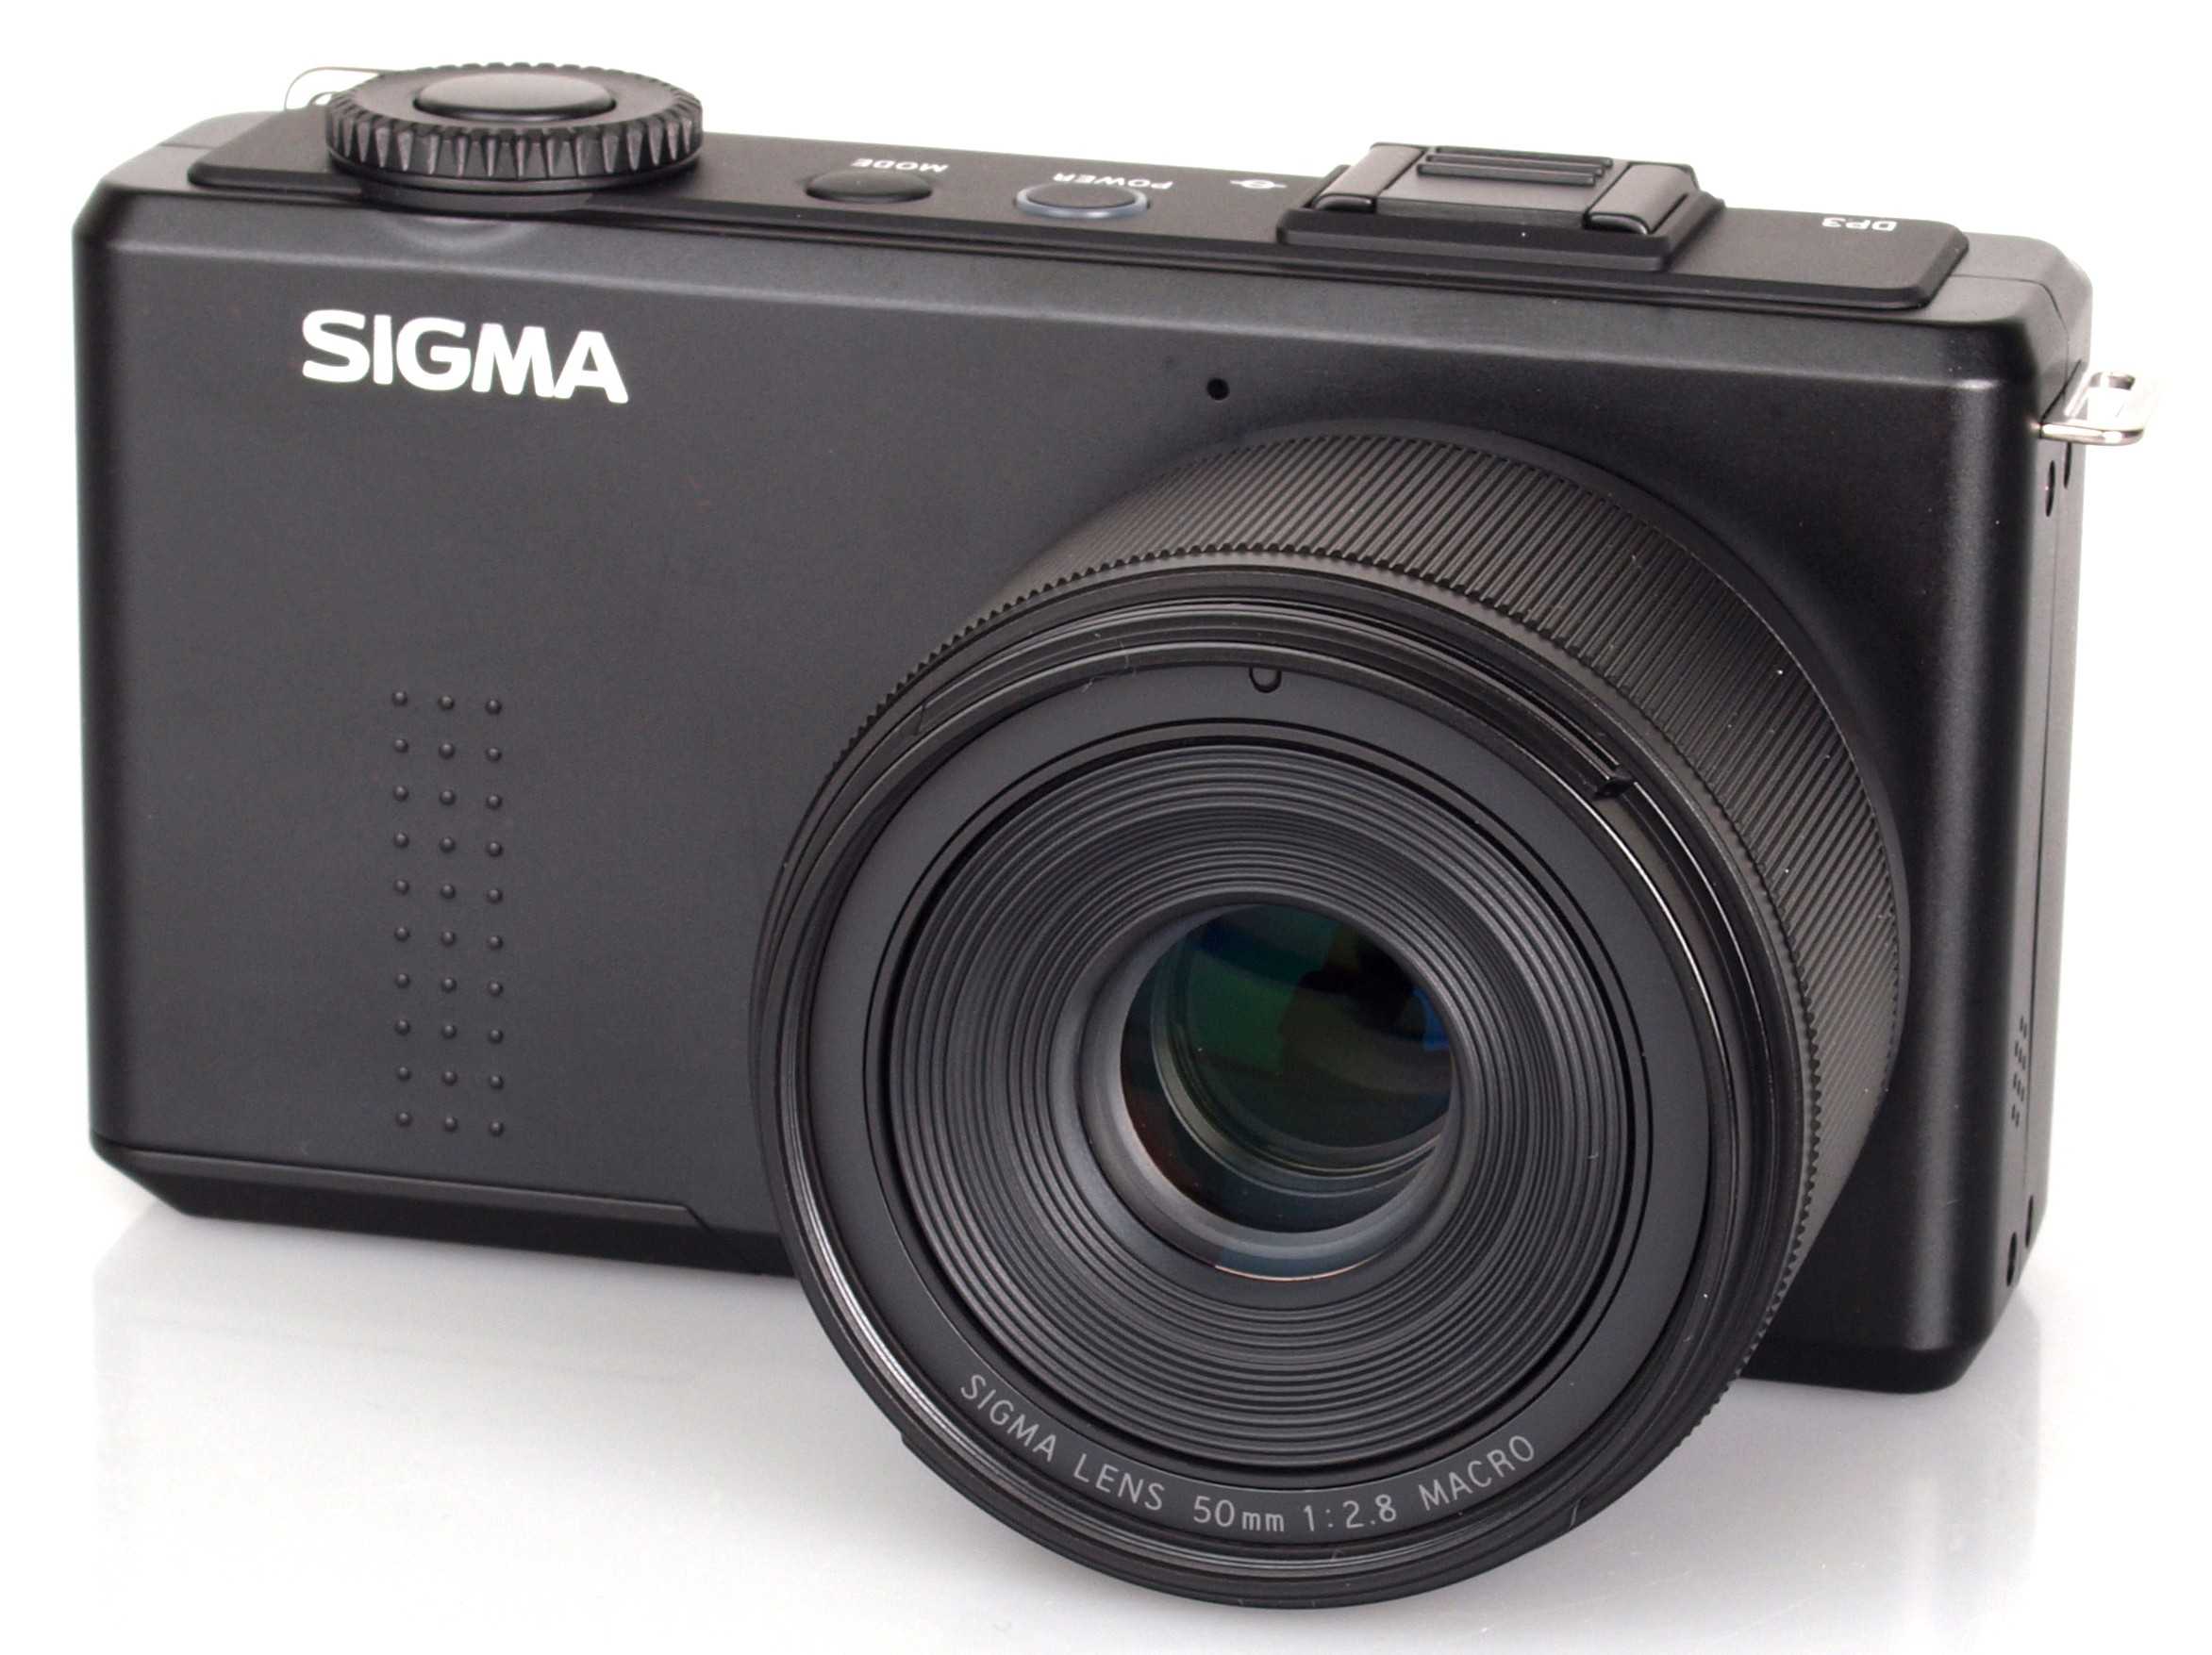 Sigma dp2 merrill - купить  в калининградская область, скидки, цена, отзывы, обзор, характеристики - фотоаппараты цифровые